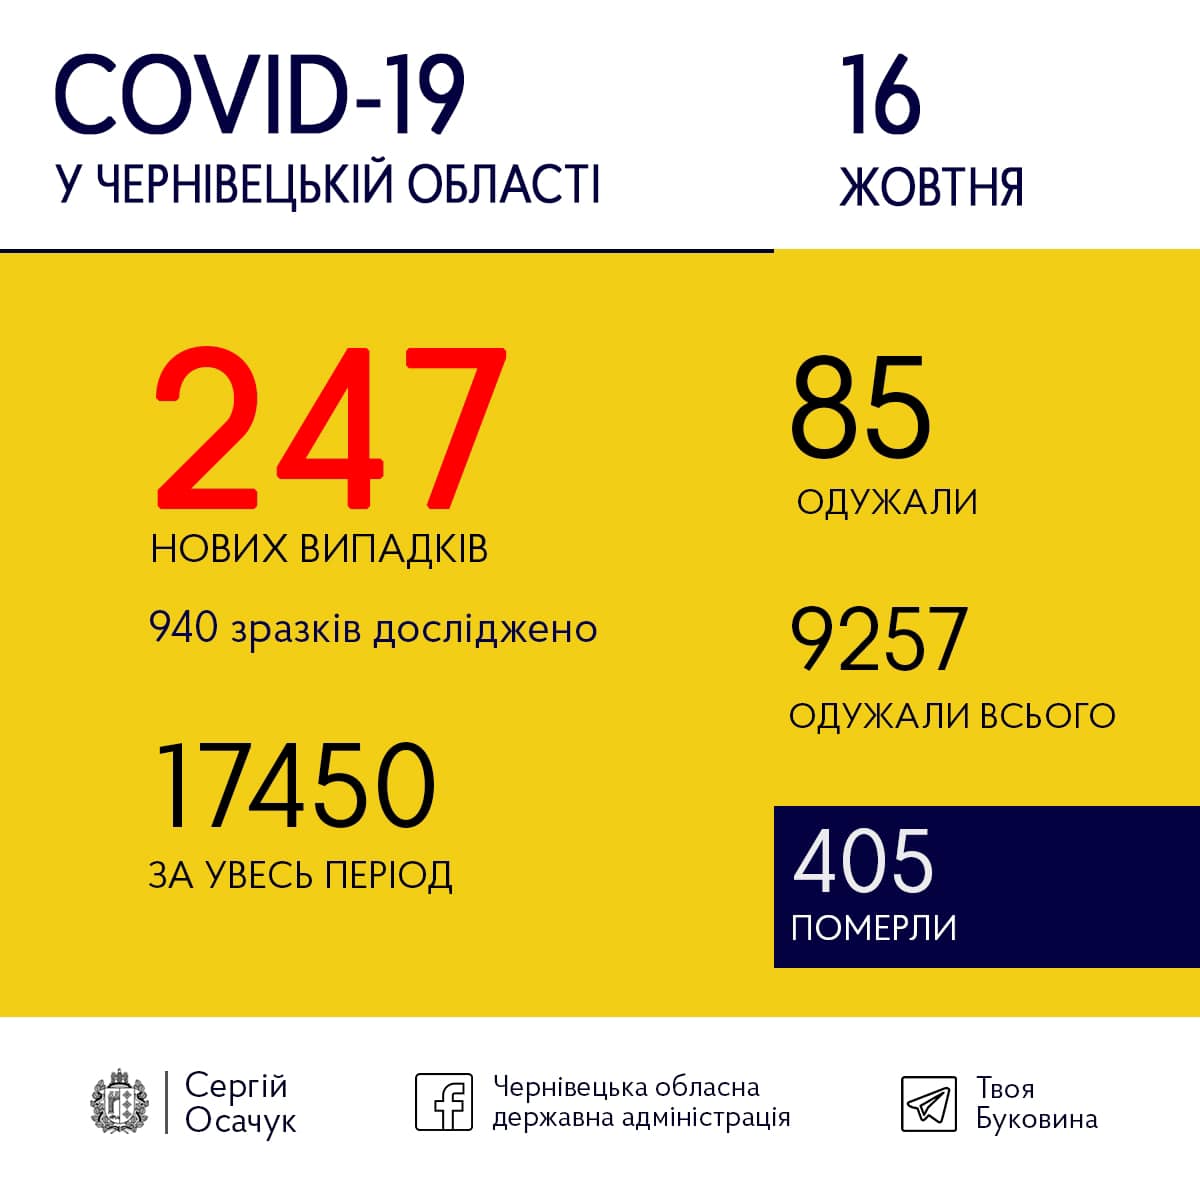 У Чернівецькій області за добу зафіксовано 247 нових хворих на COVID-19 - найбільше від початку епідемії  